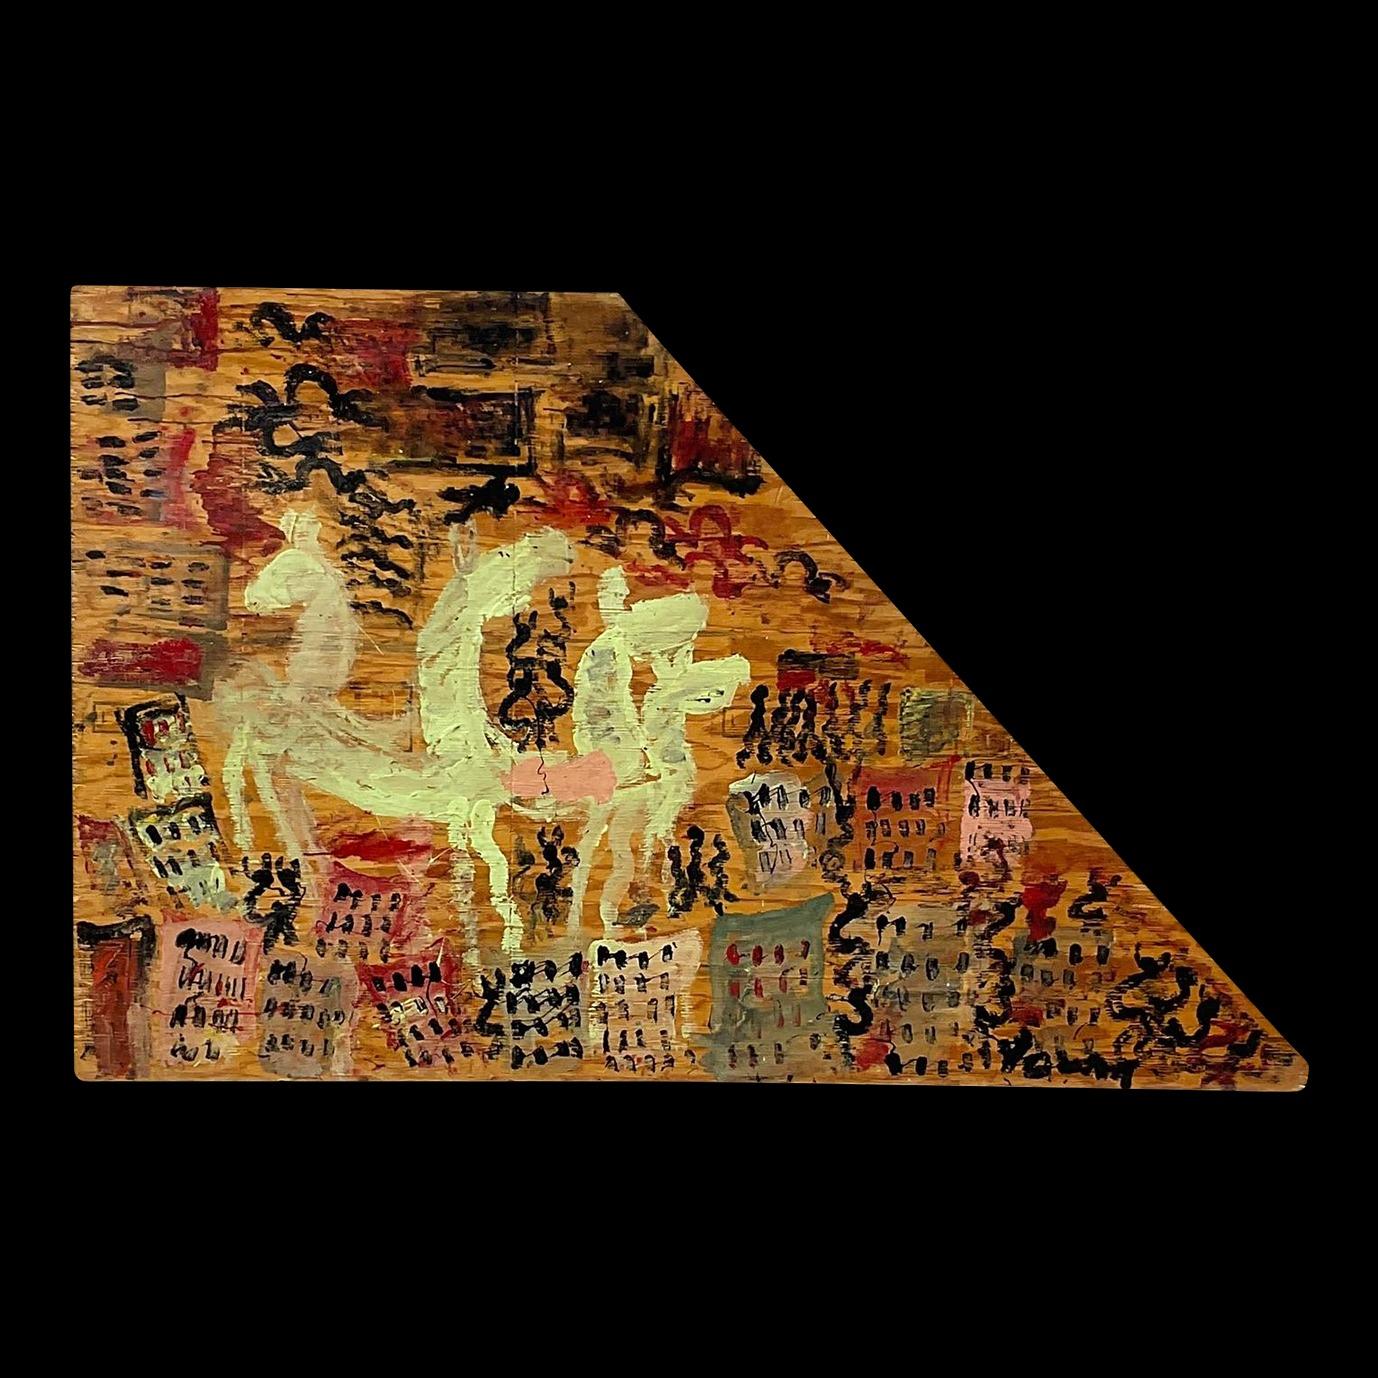 Dieses Vintage Purvis Young Gemälde ist eine einzigartige abstrakte auf Holz gemalt. Die gelben, kamelartigen Wesen, die von einer zartfarbigen Stadtlandschaft und scheinbar zufällig angeordneten abstrakten Formen umgeben sind, machen dieses Werk zu